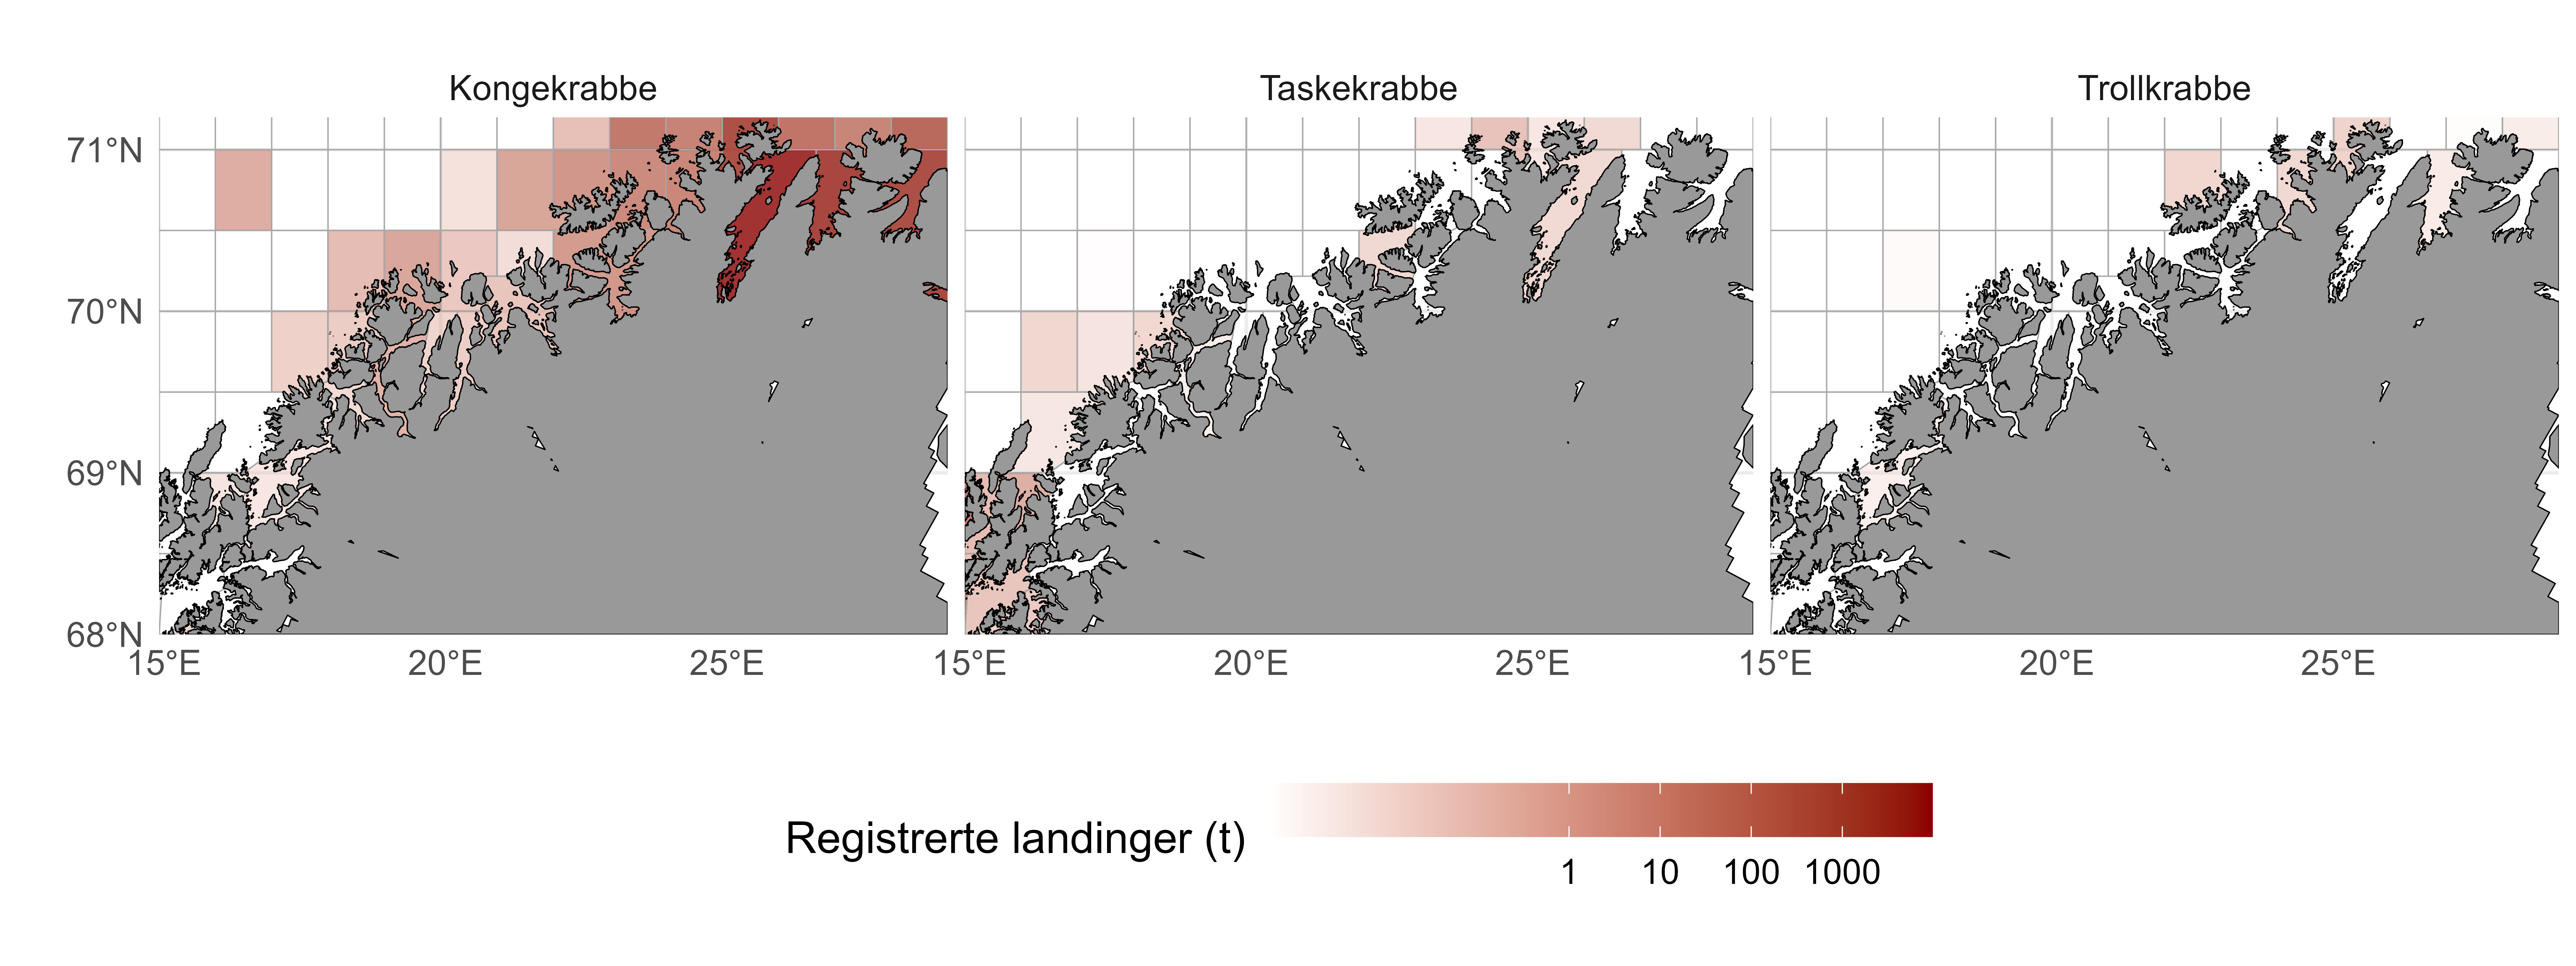 Landinger registrert i sluttseddelregisteret av henholdsvis kongekrabbe (Paralithodes camtschaticus), taskekrabbe (Cancer pagurus) og trollkrabbe (Lithodes maja) mellom Vest og Vest-Finnmark, summert per lokasjon fra 2000- 2023 (oktober).